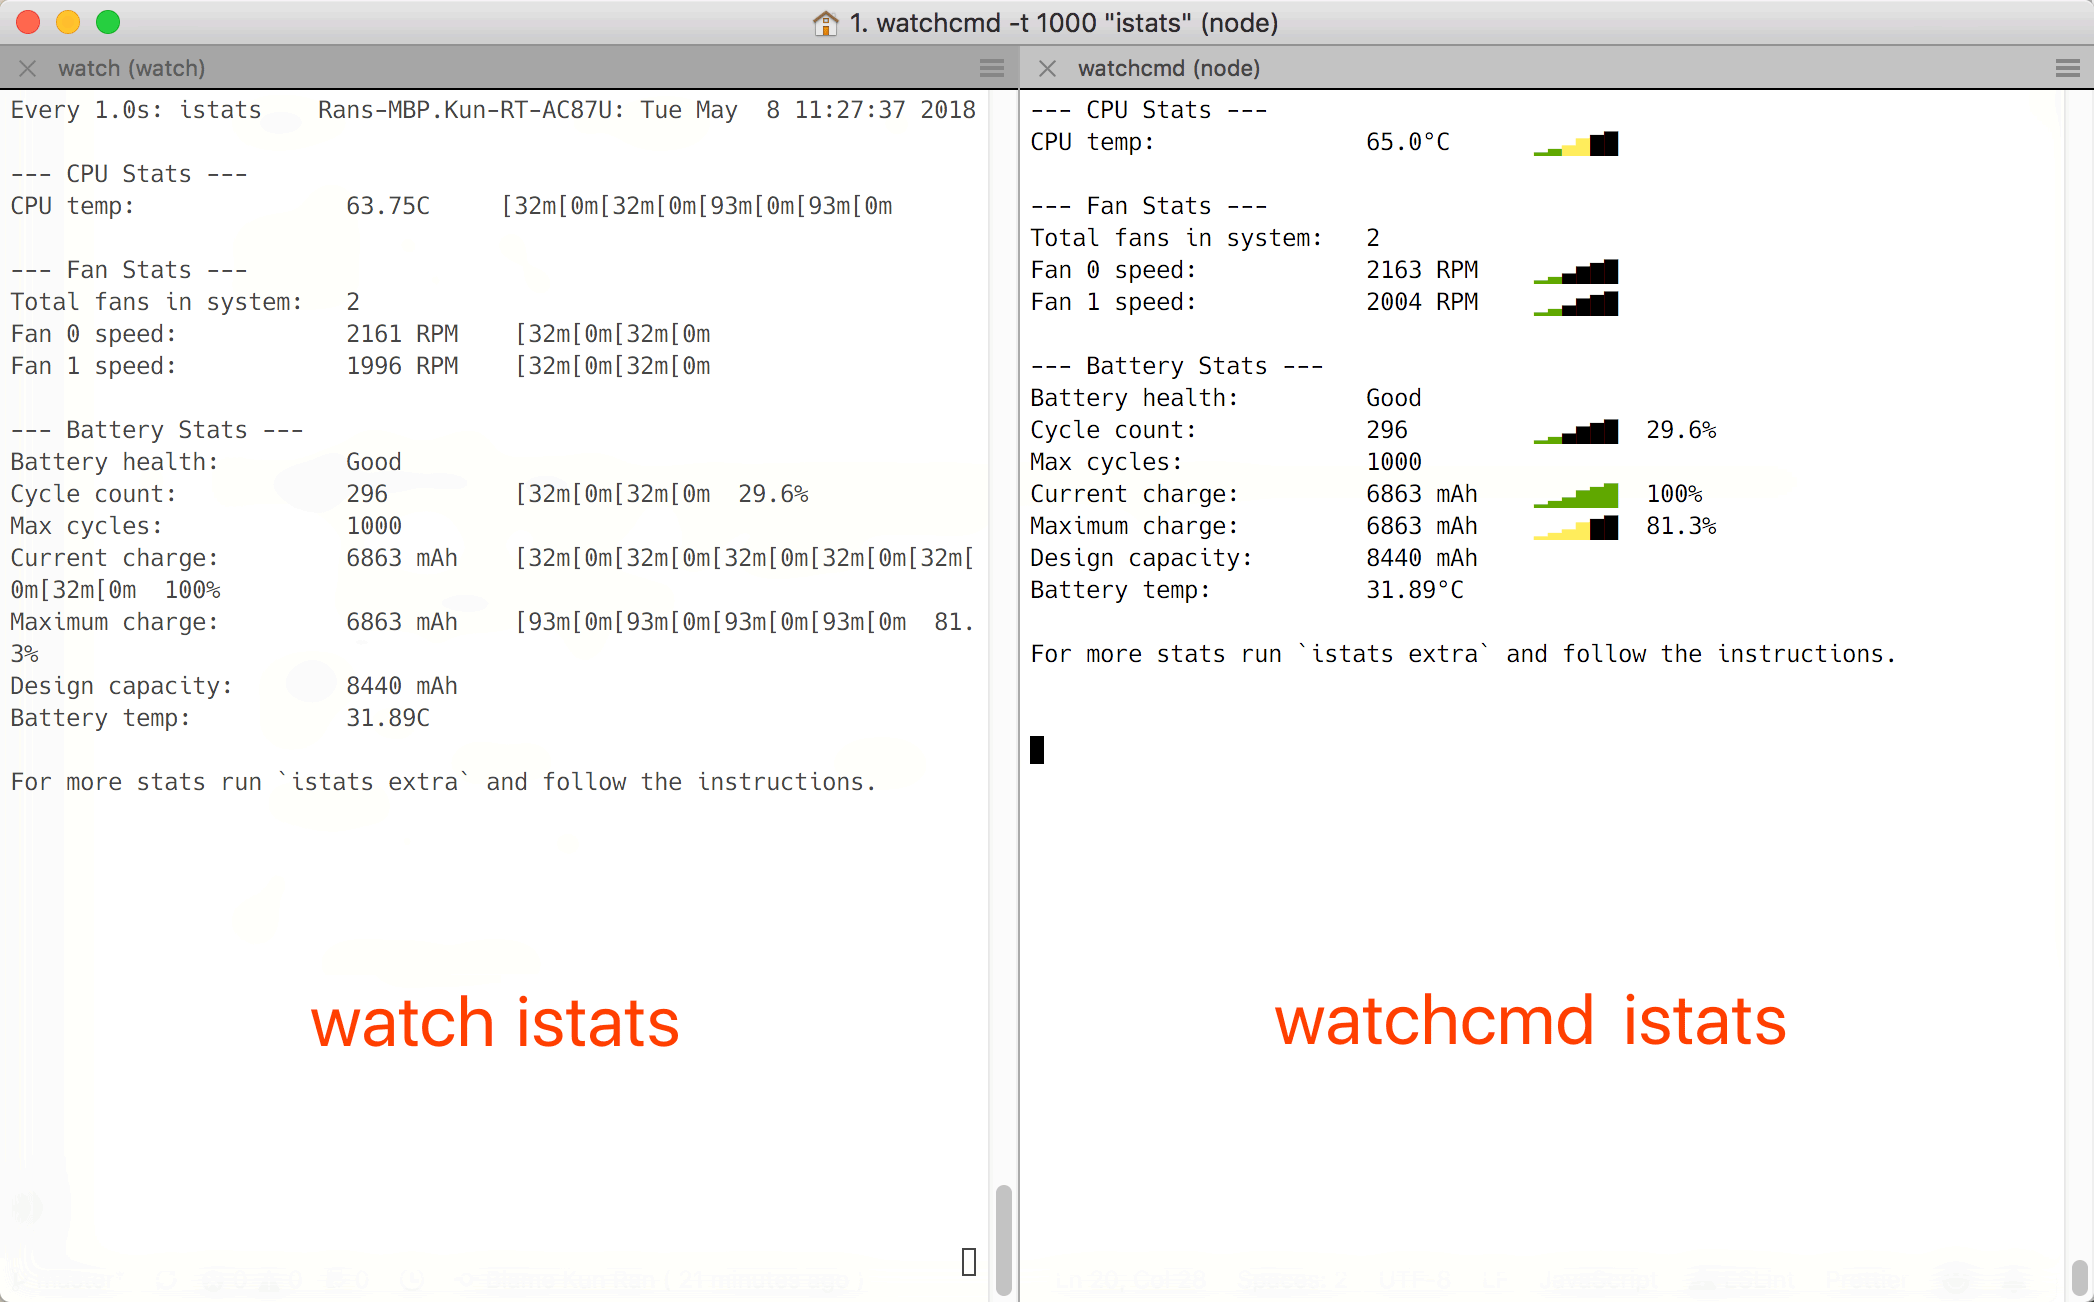 Watchcmd vs Watch